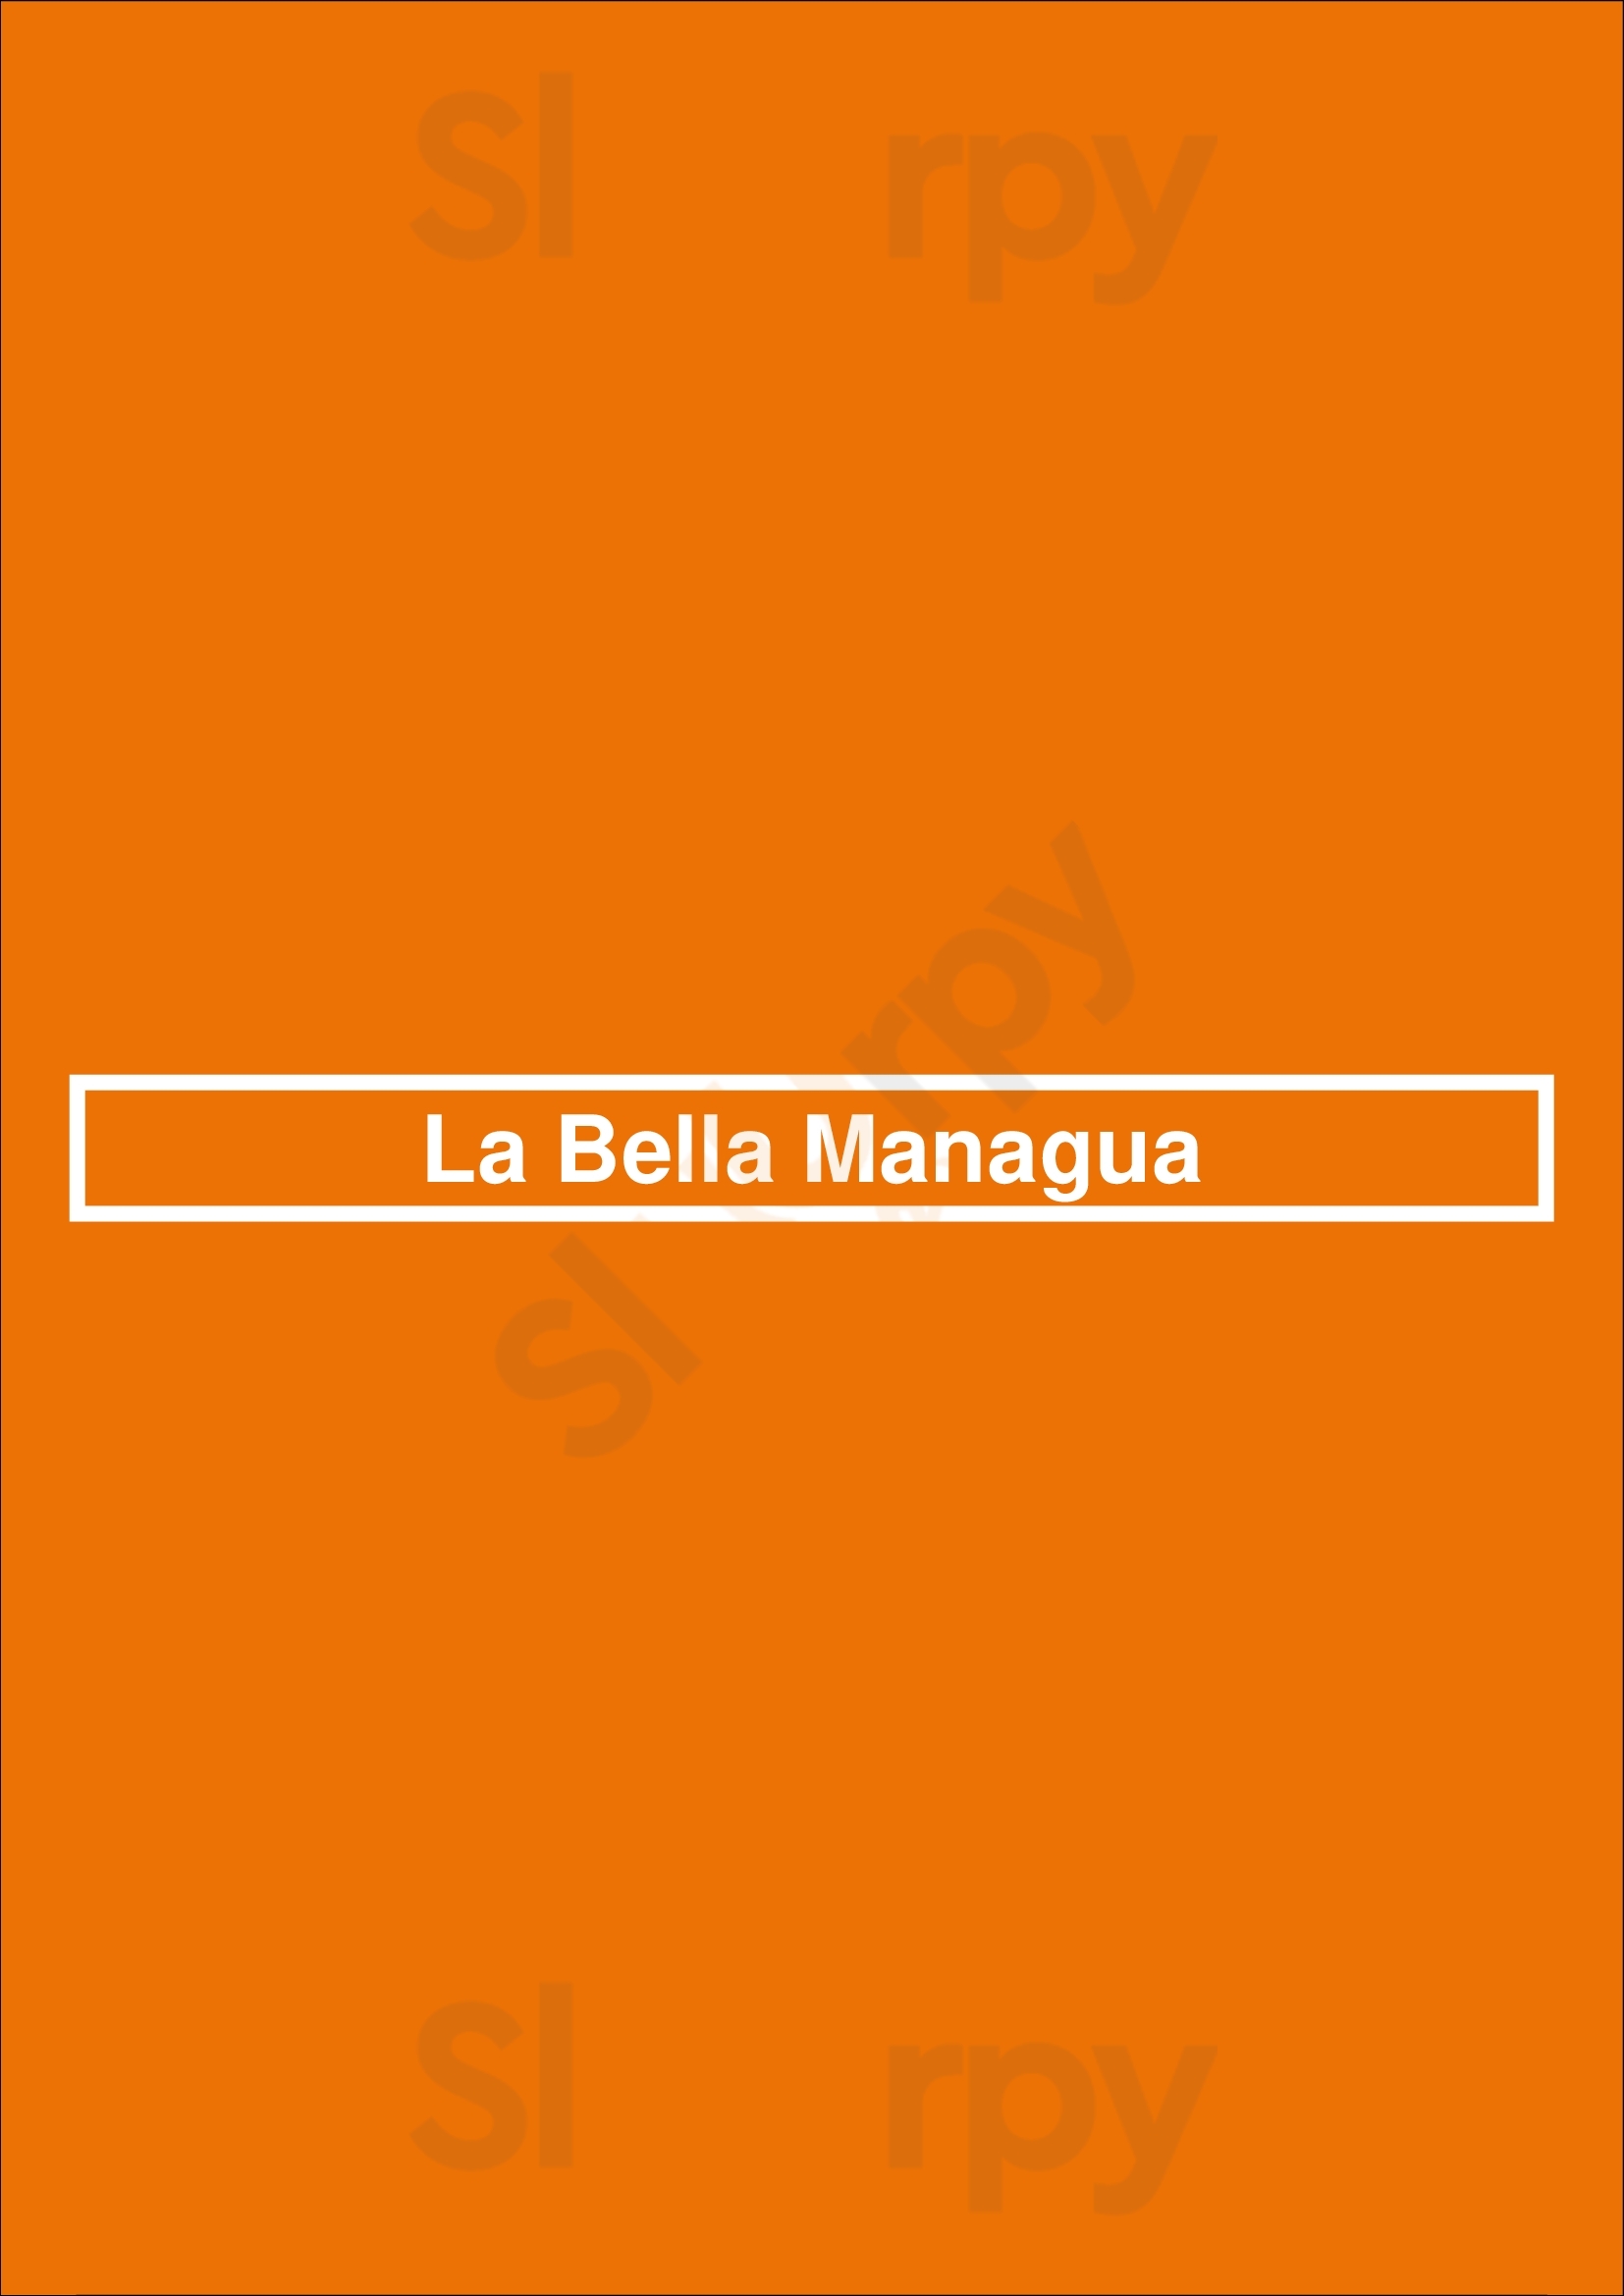 La Bella Managua Toronto Menu - 1